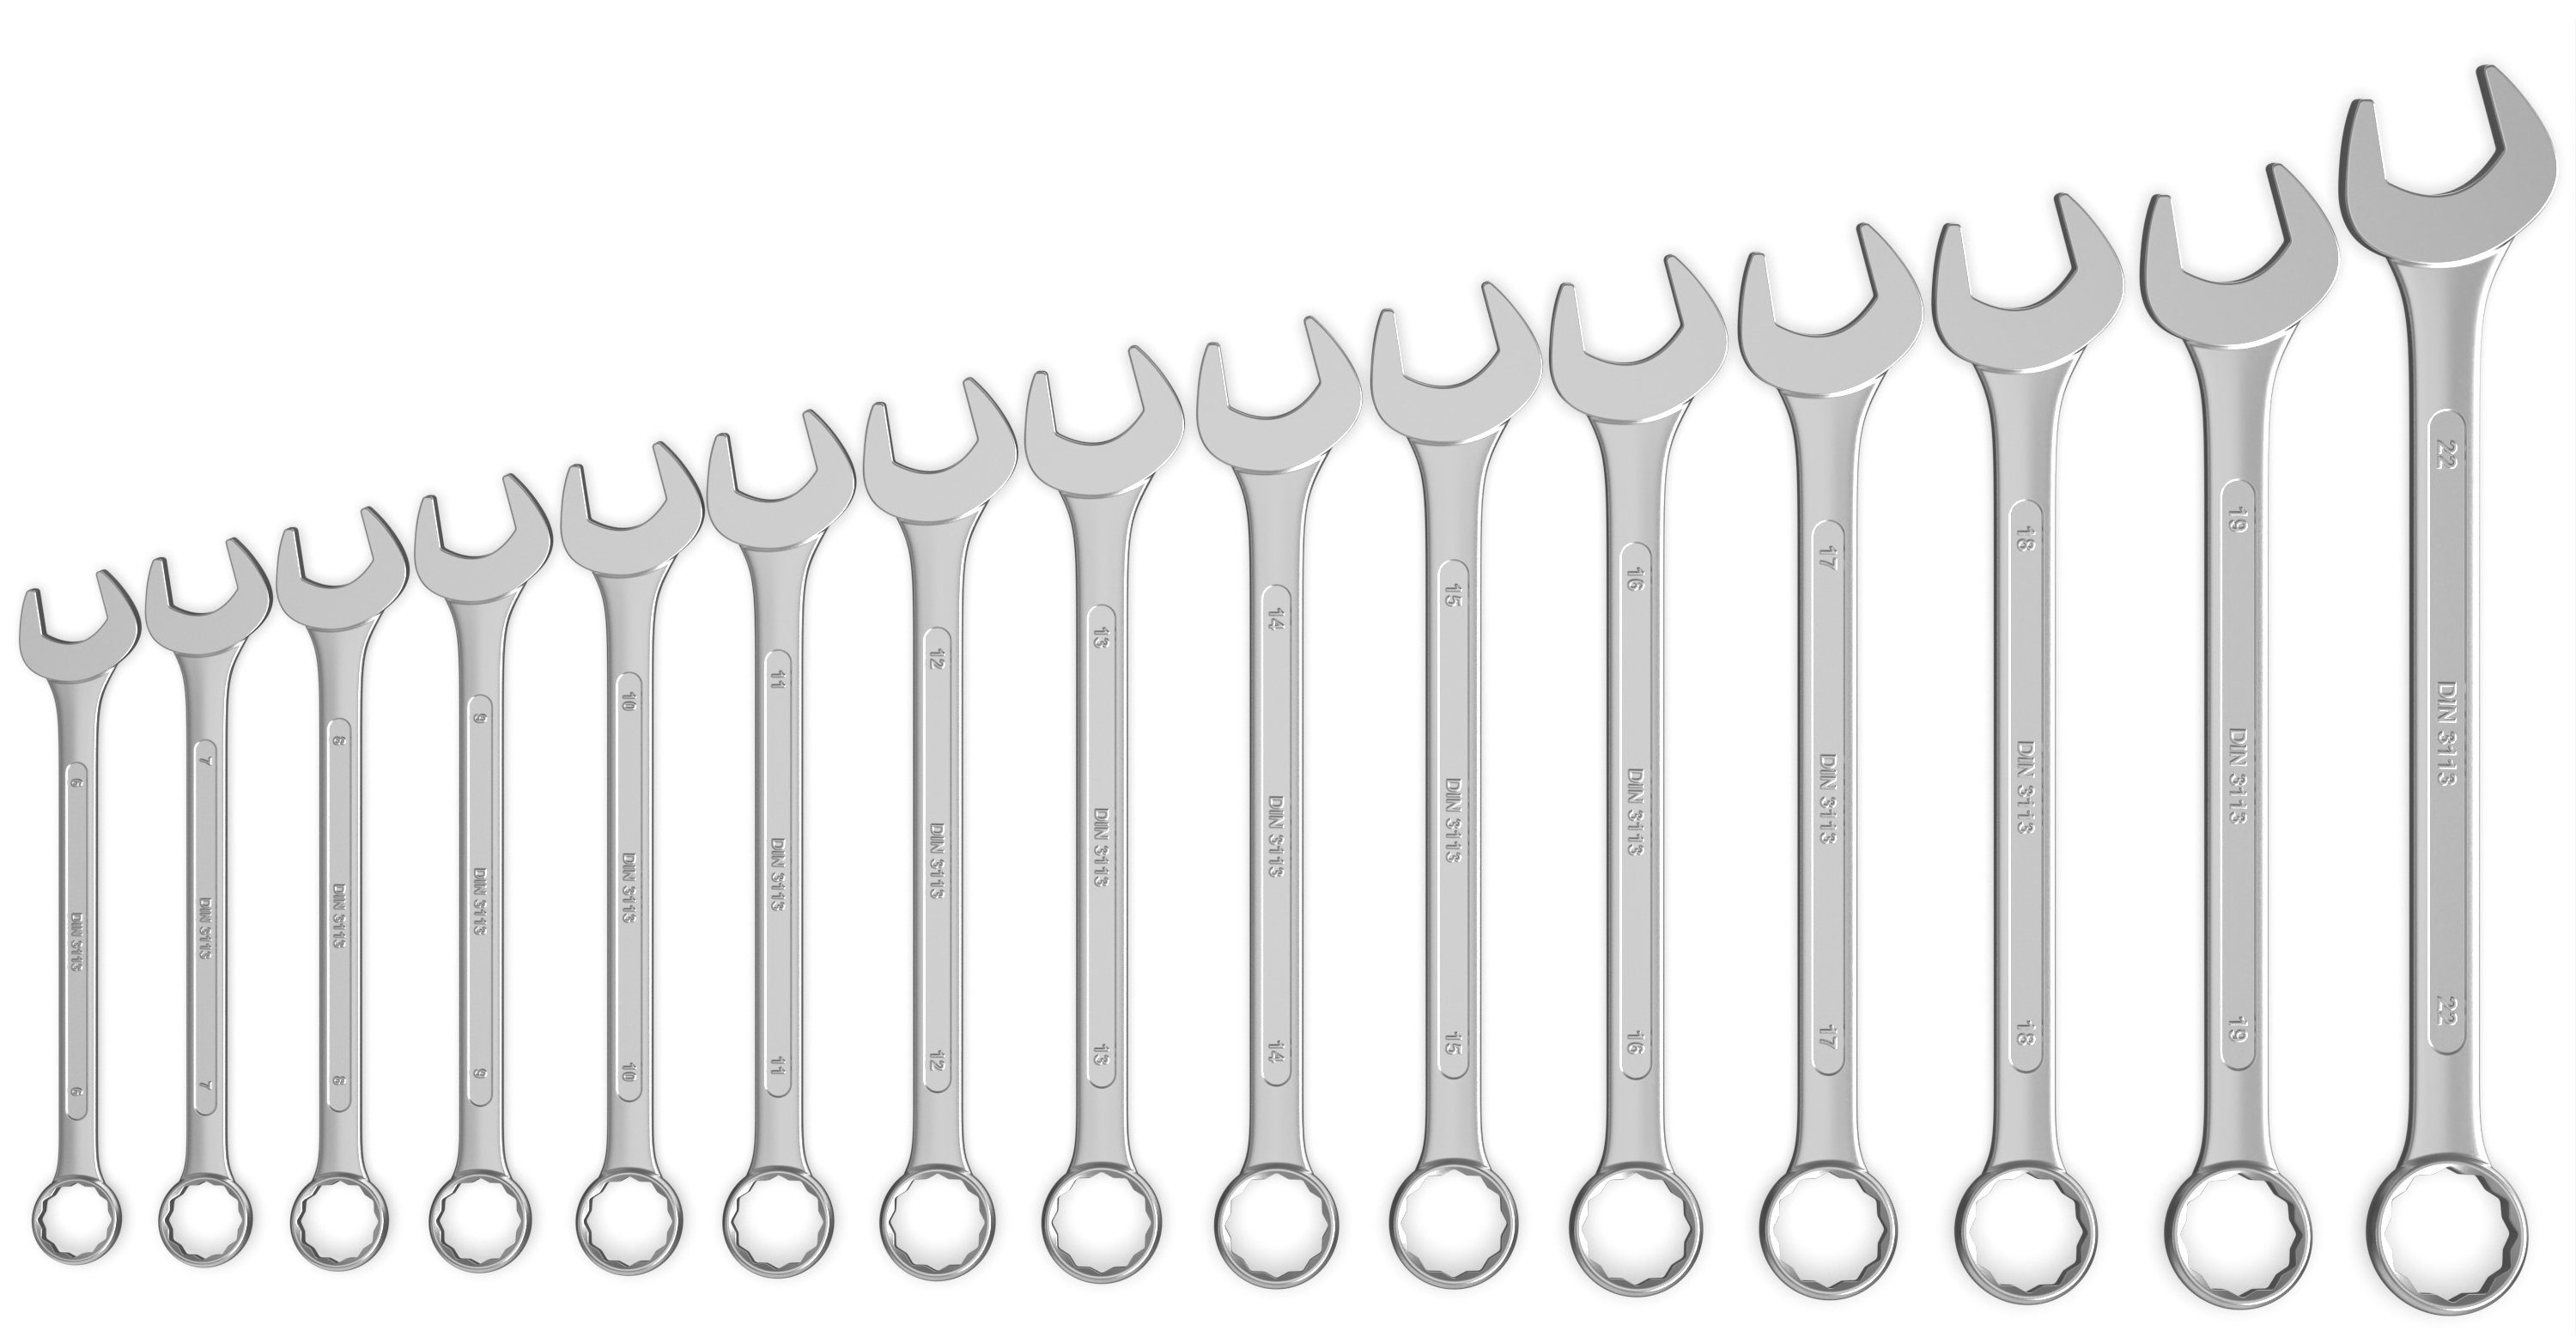 FAMEX Gabel- und Ringschlüssel CV-Stahl Satz (Schraubenschlüssel, 10345-15 St), 15 Ringmaulschlüssel aus